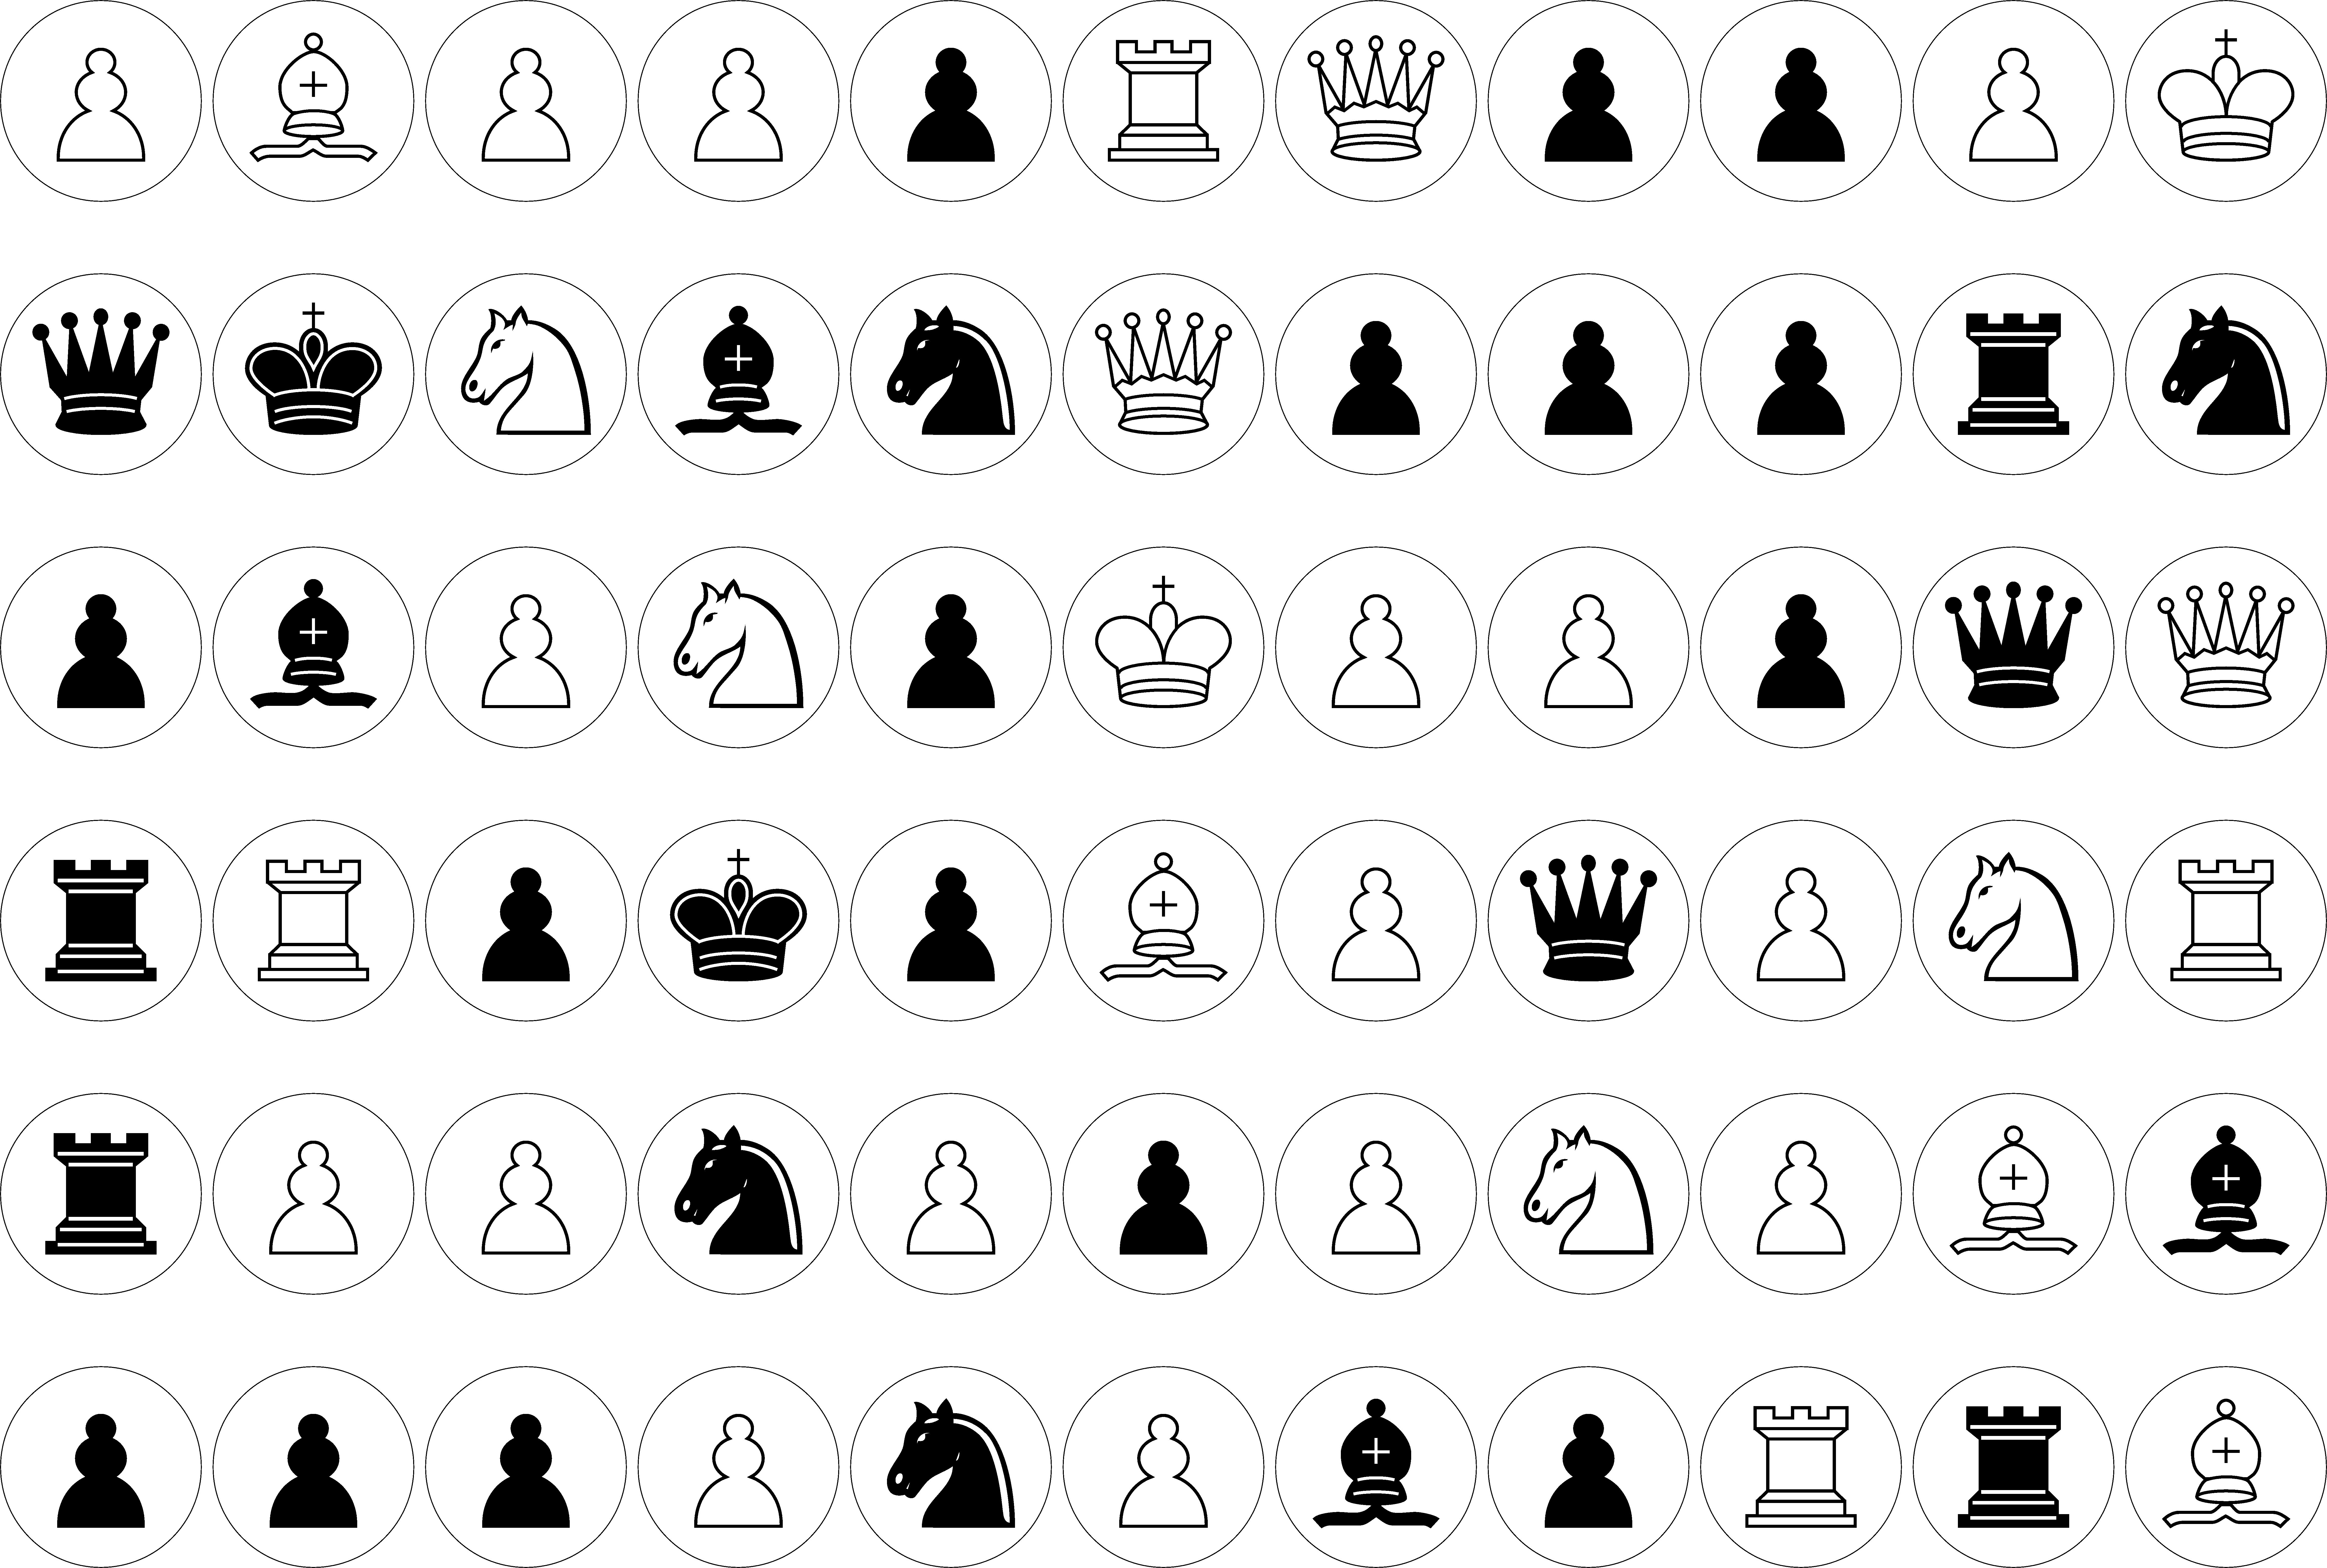 Printable Chess Set